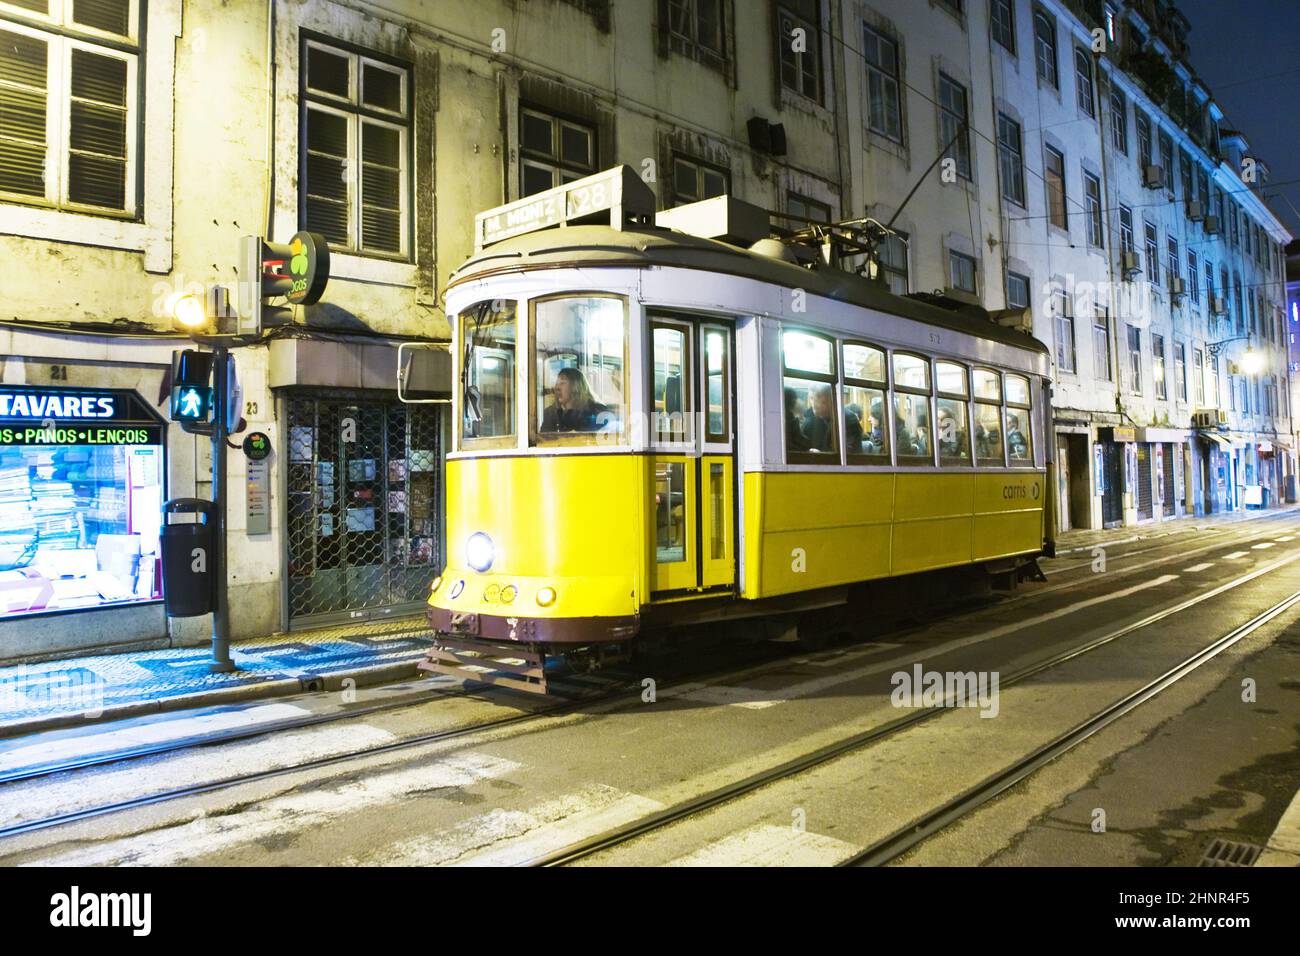 Lisboa por la noche, famoso tranvía, tranvía histórico está en funcionamiento Foto de stock